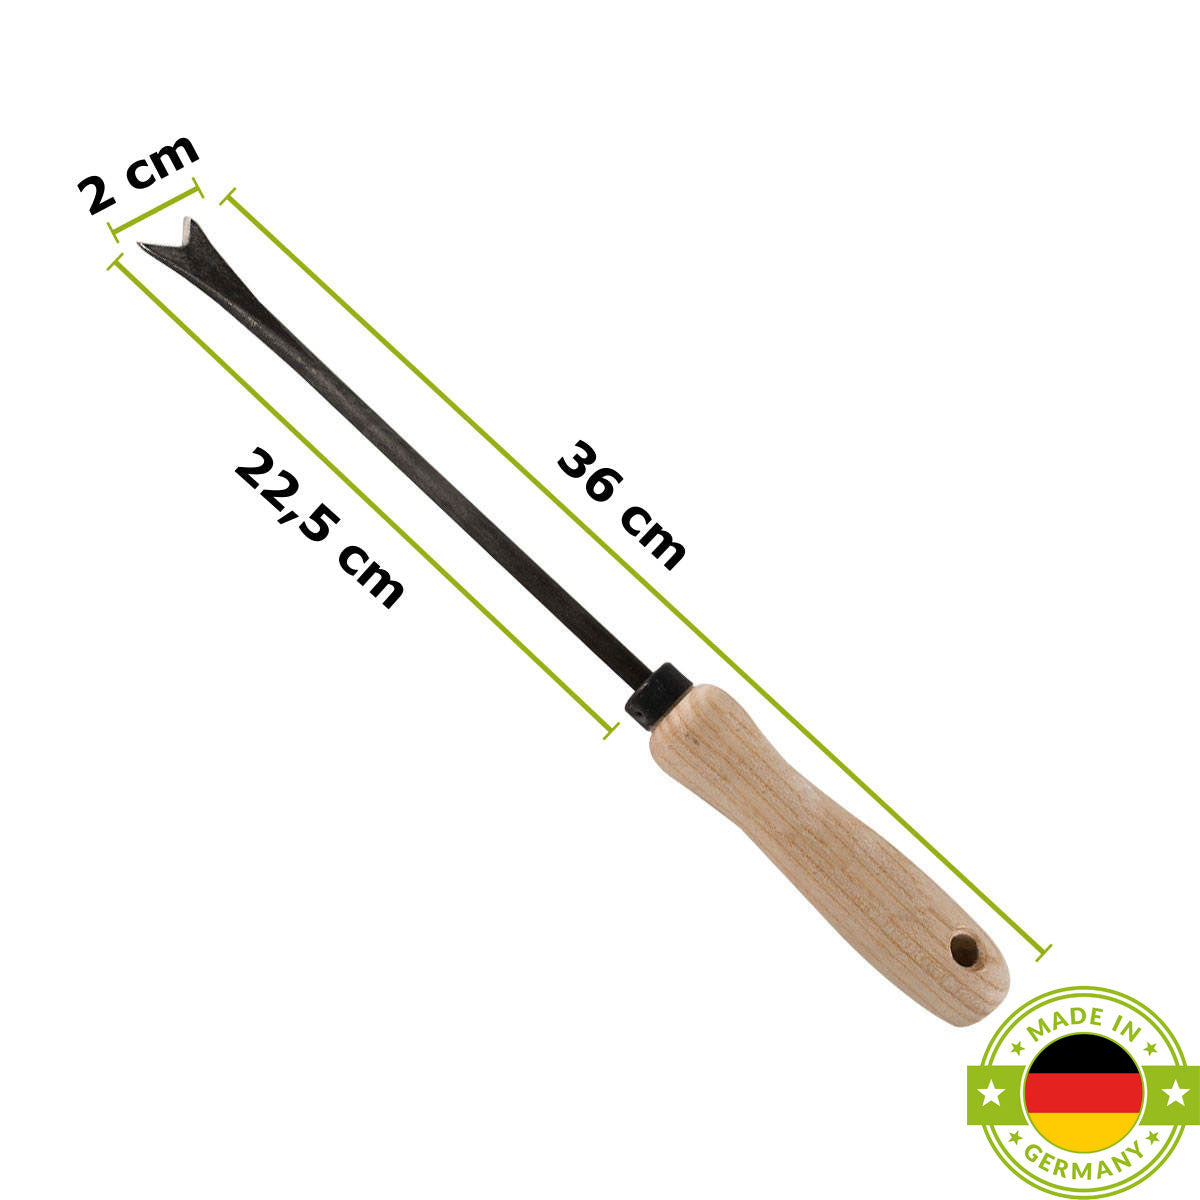 Unkrautstecher mit Eschenstiel Grifflänge: 14 cm Gesamtlänge: 36 cm Gewicht: 200 gr handgeschmiedet in Deutschland